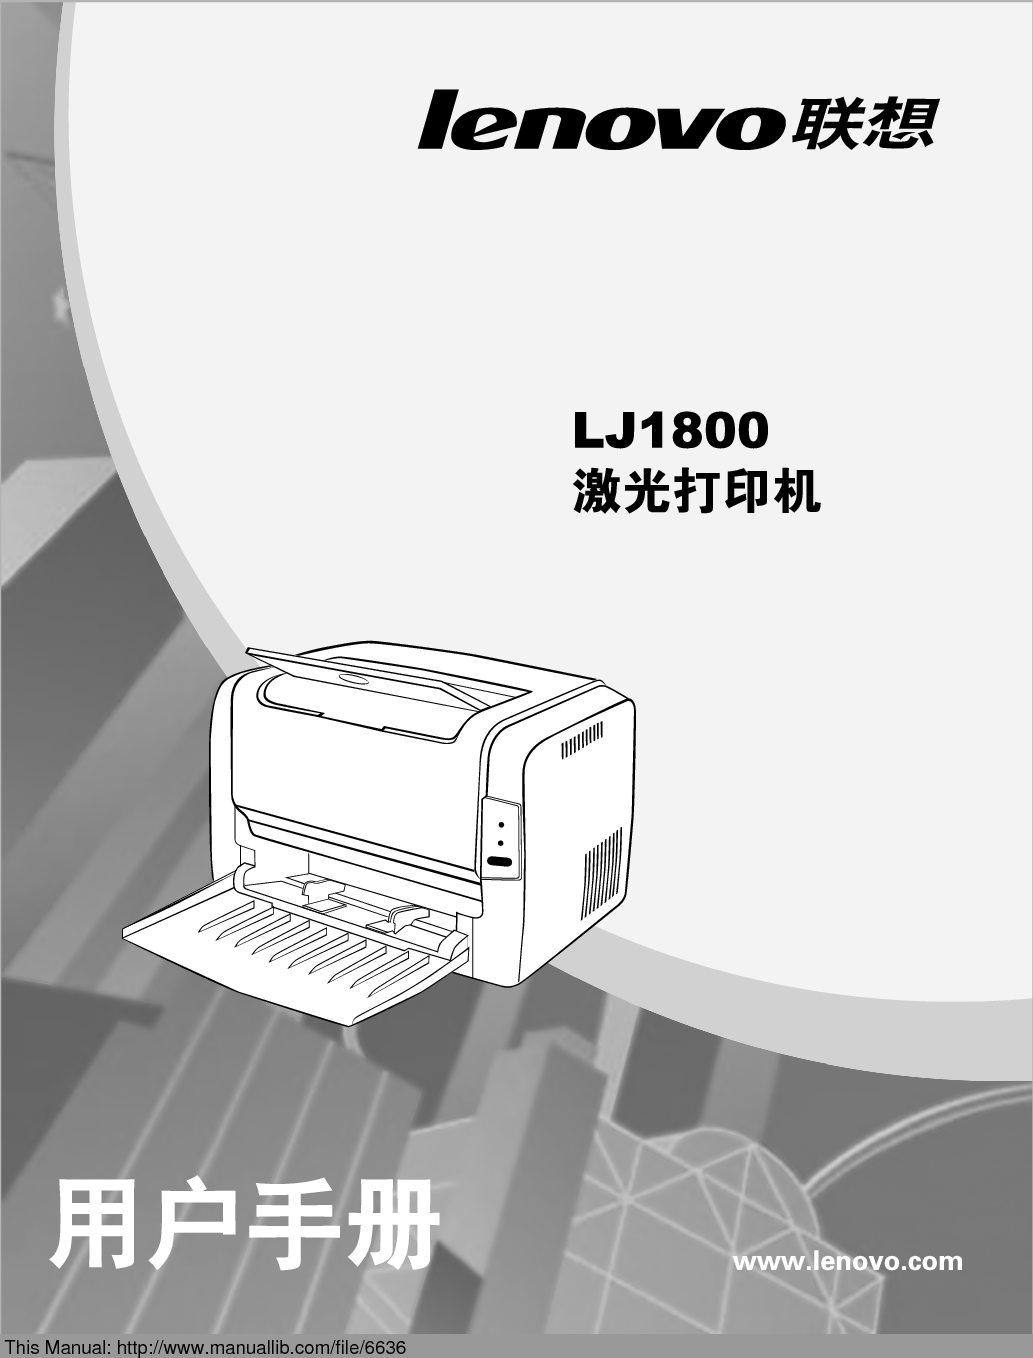 联想 Lenovo LJ1800 用户手册 封面